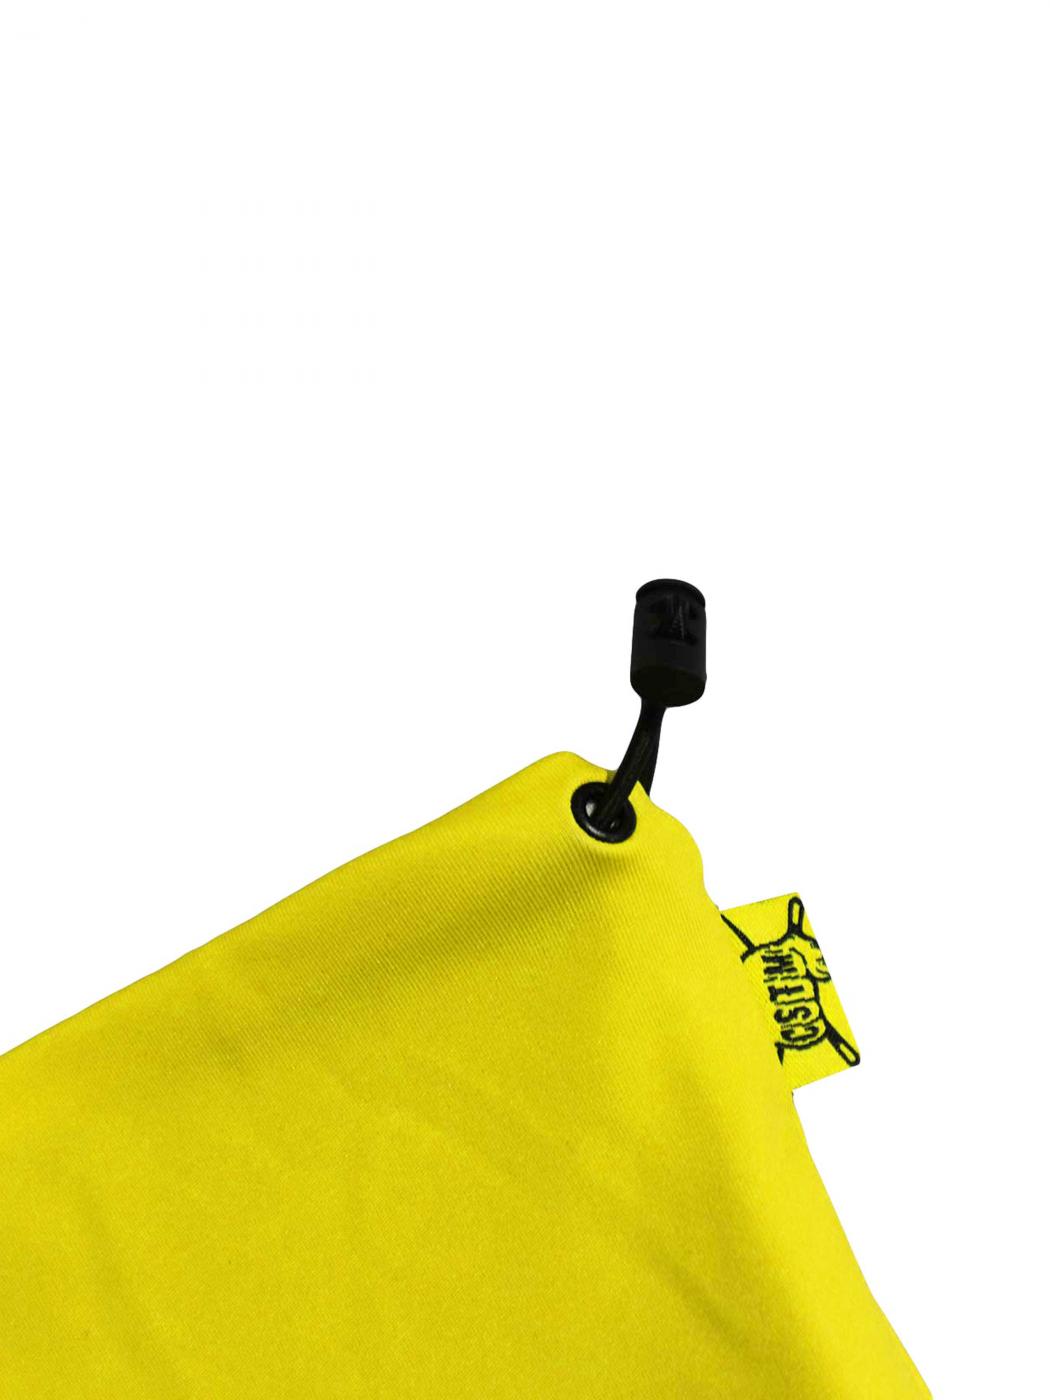 Баф Pikachu Yellow, Custom Wear - Фото 2